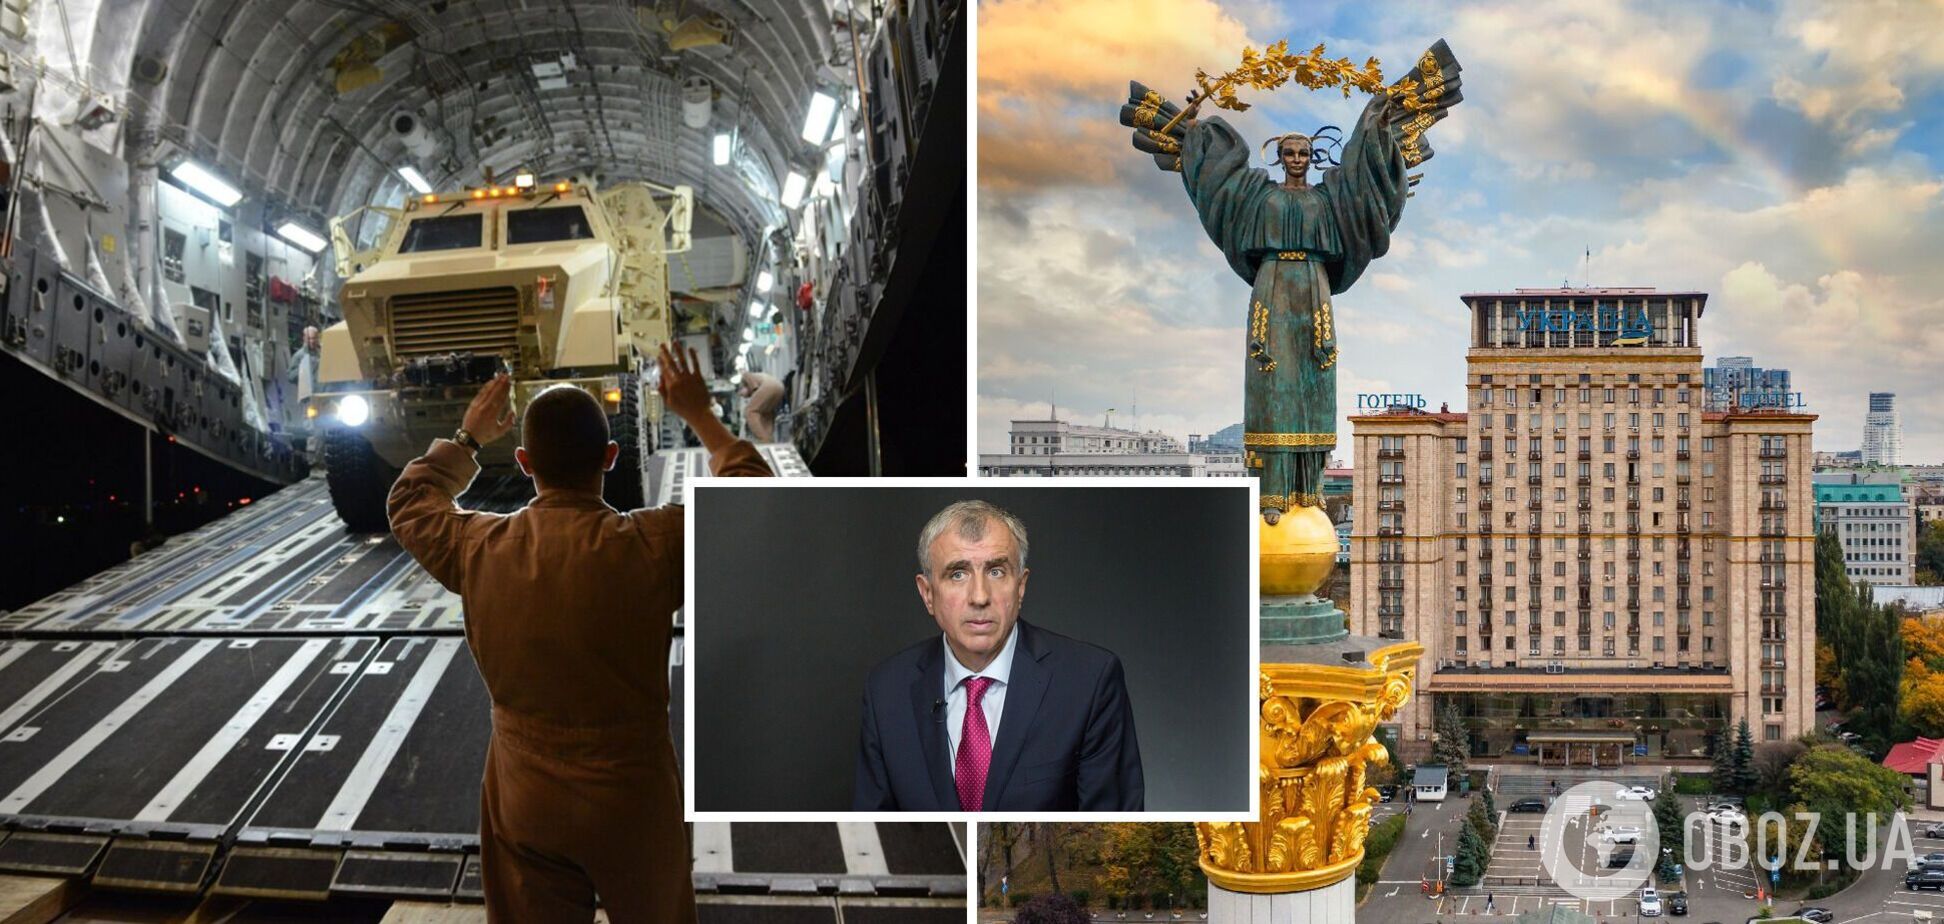 Допомога Заходу припиниться, Україна капітулює? Чому апокаліпсис неможливий: інтерв’ю з Левченком